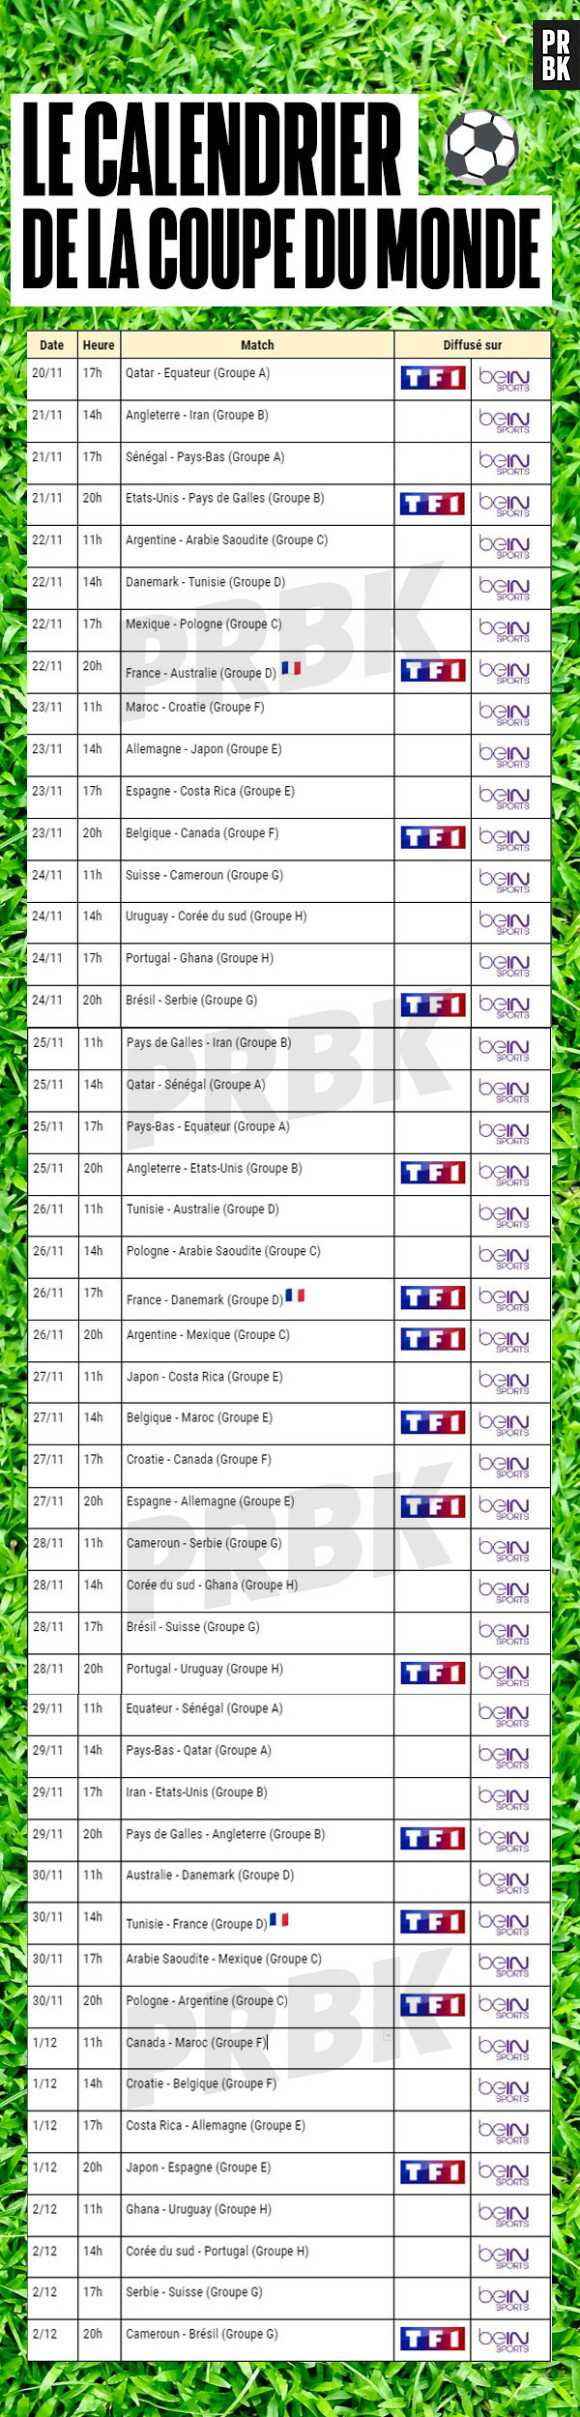 Le calendrier de tous les matchs pour la Coupe du Monde 2022